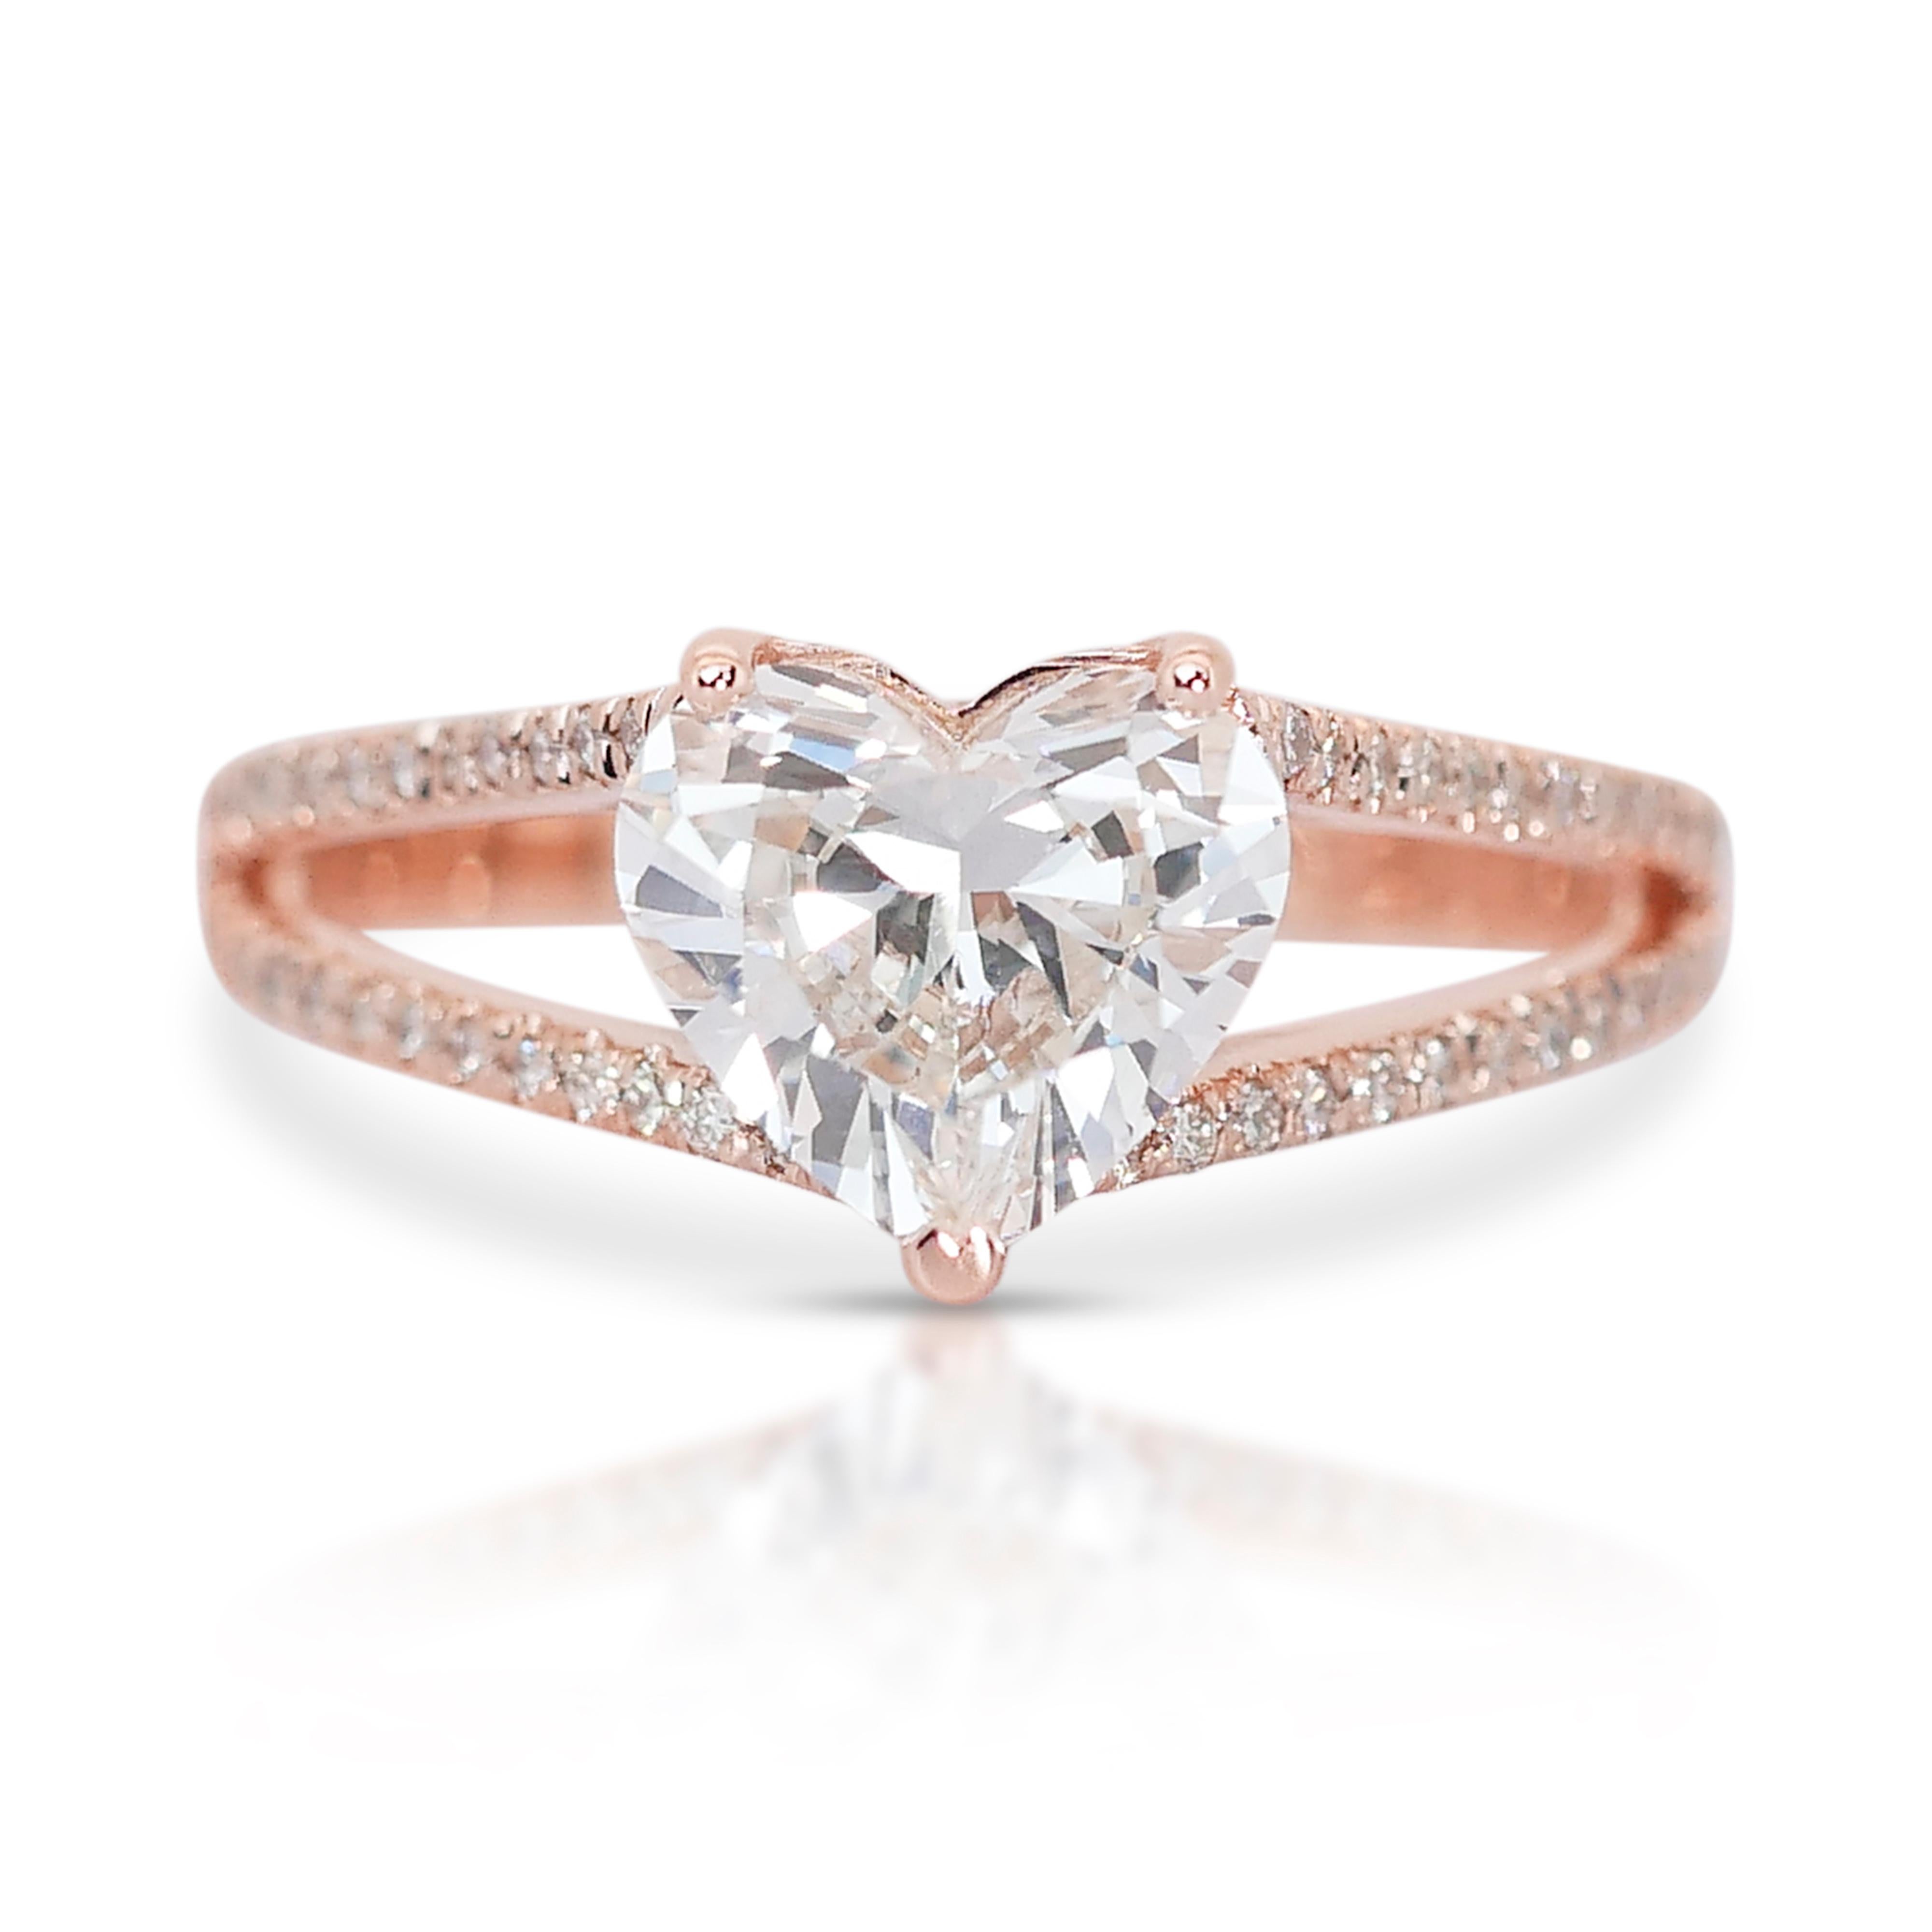 Bezaubernder 18 Karat Roségold natürlicher Diamant-Pavé-Ring mit/2,03 Karat - IGI-zertifiziert

Ein faszinierender Ring aus 18 Karat Roségold mit einem 1,73 Karat schweren, herzförmigen Diamanten in der Mitte. Der Ring ist außerdem mit einem